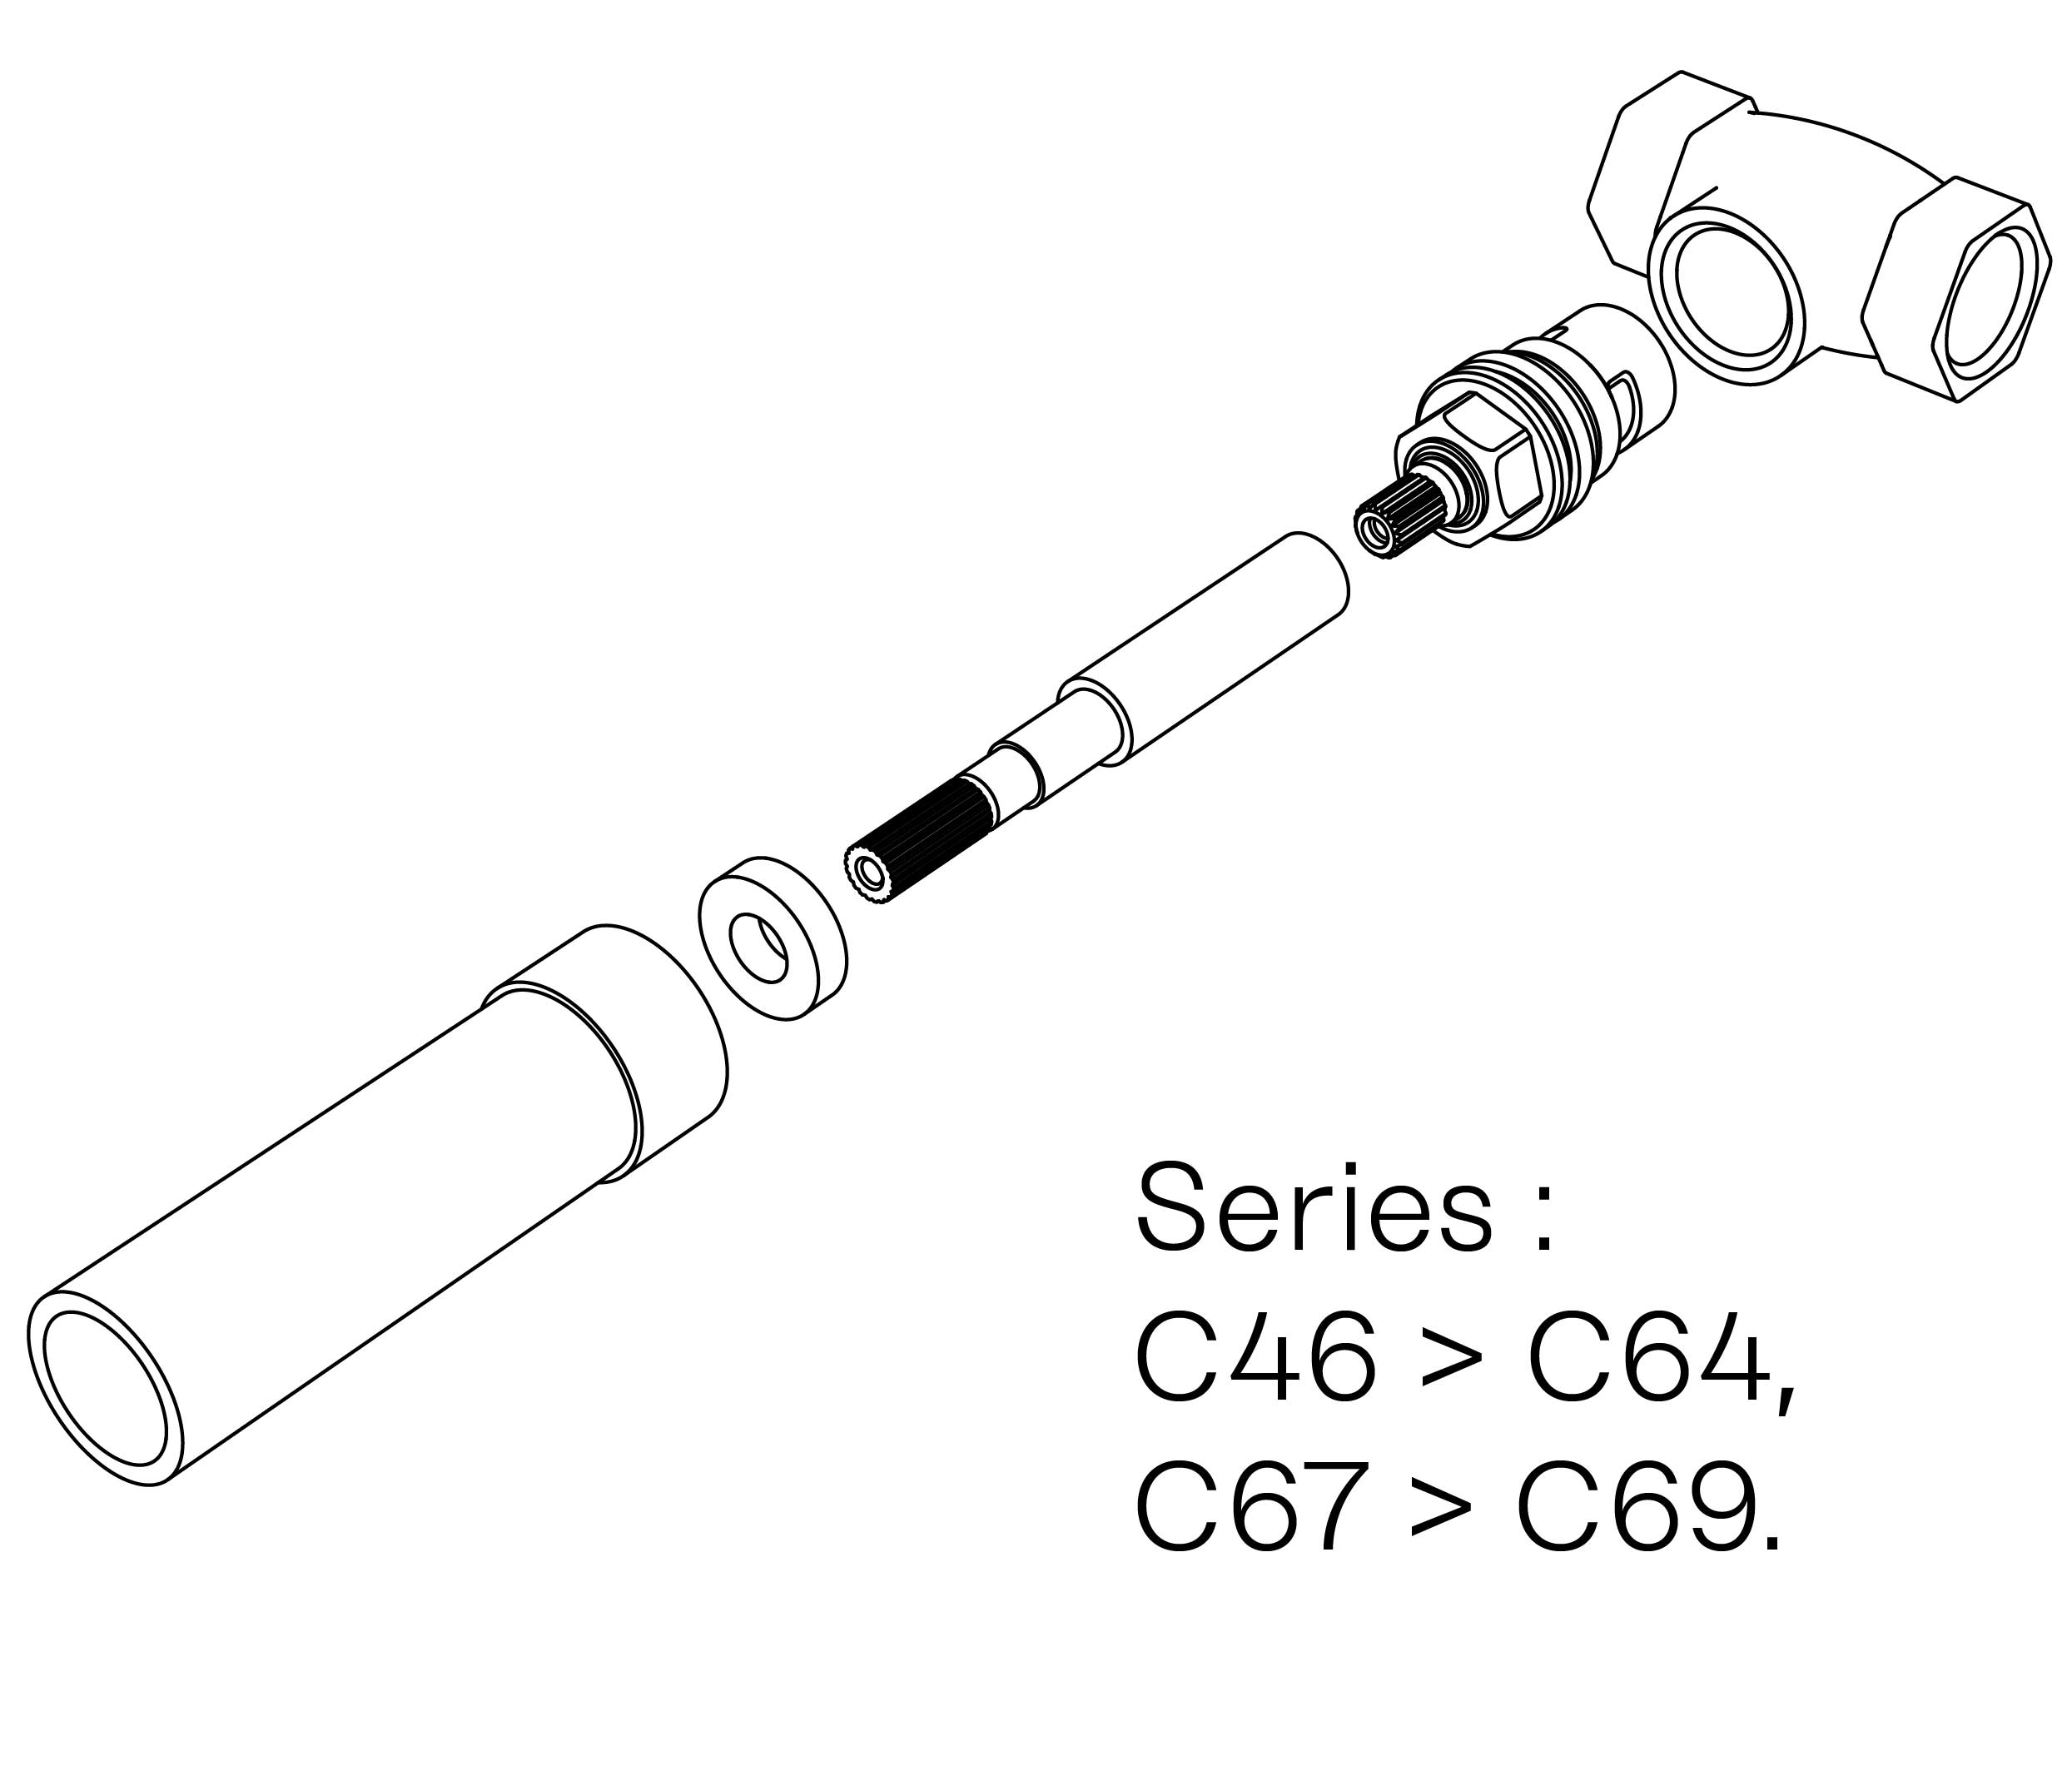 C00-22K28C Kit #2 for W-M valve 1/2″, 1/4 turn, Right